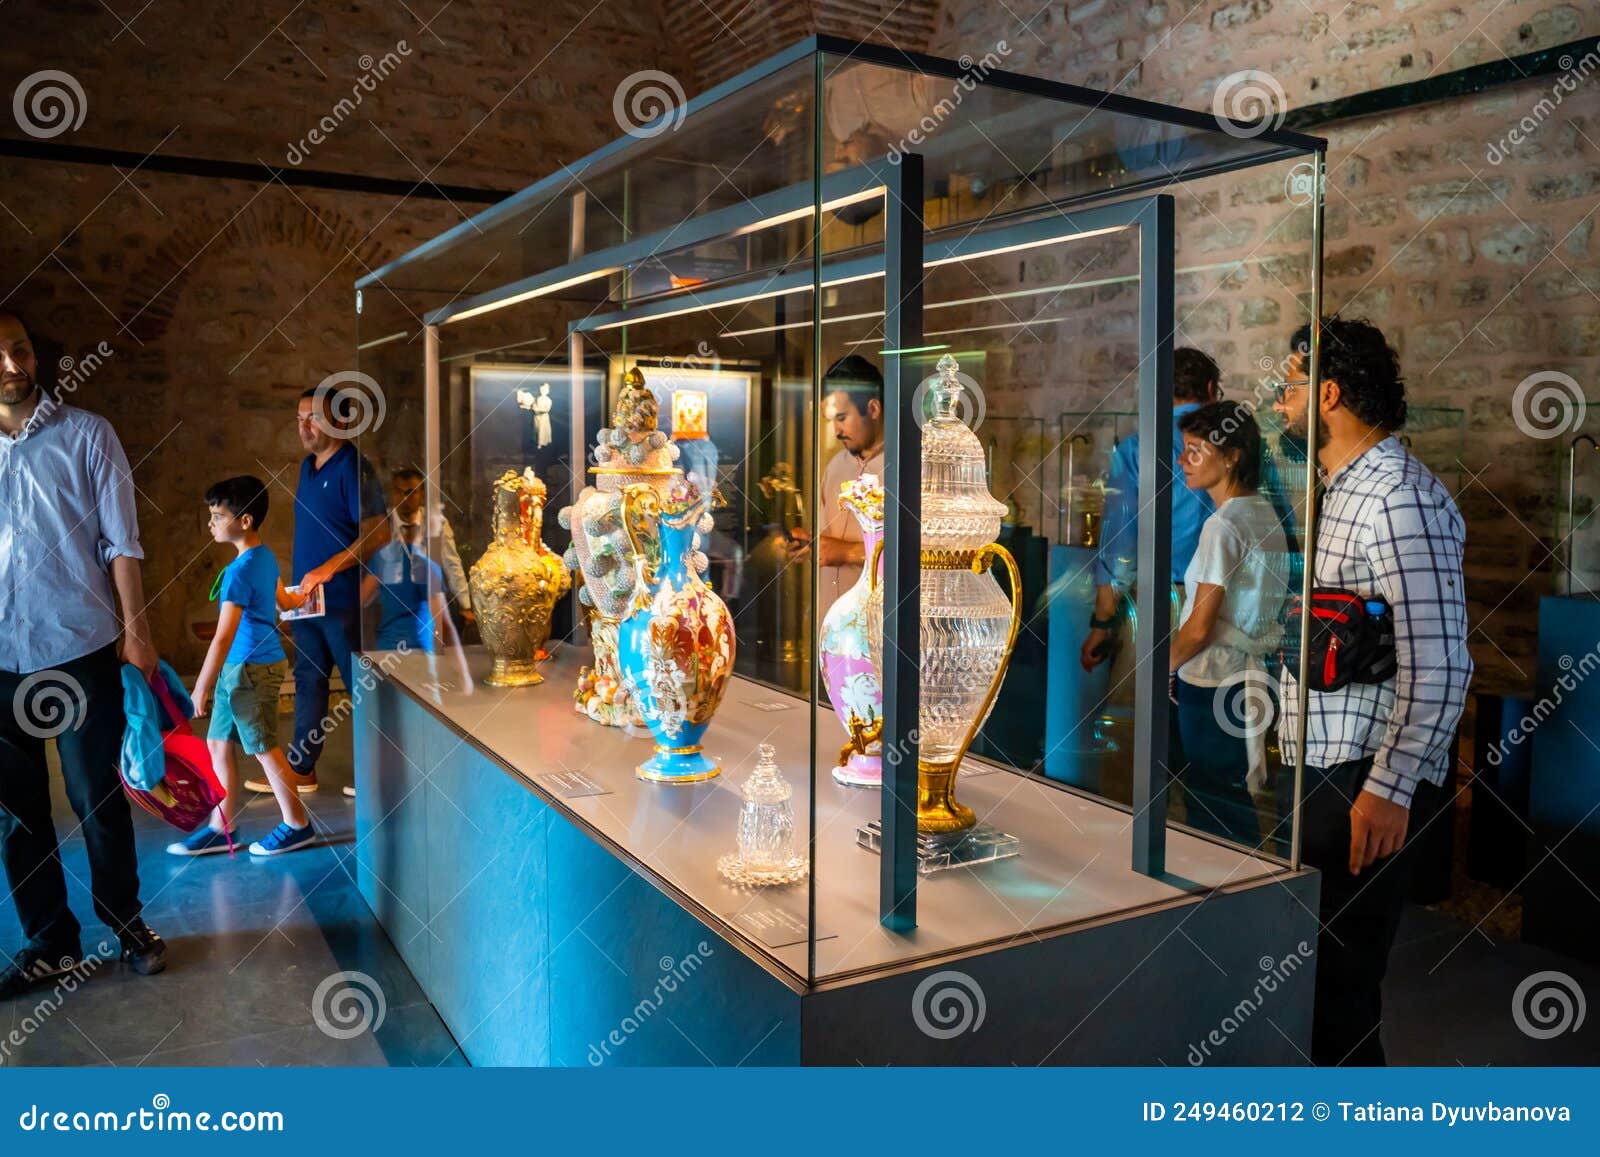 伊斯坦布尔2022年5月28日: 考古博物馆托普卡皮厨房馆的内饰和展览图库